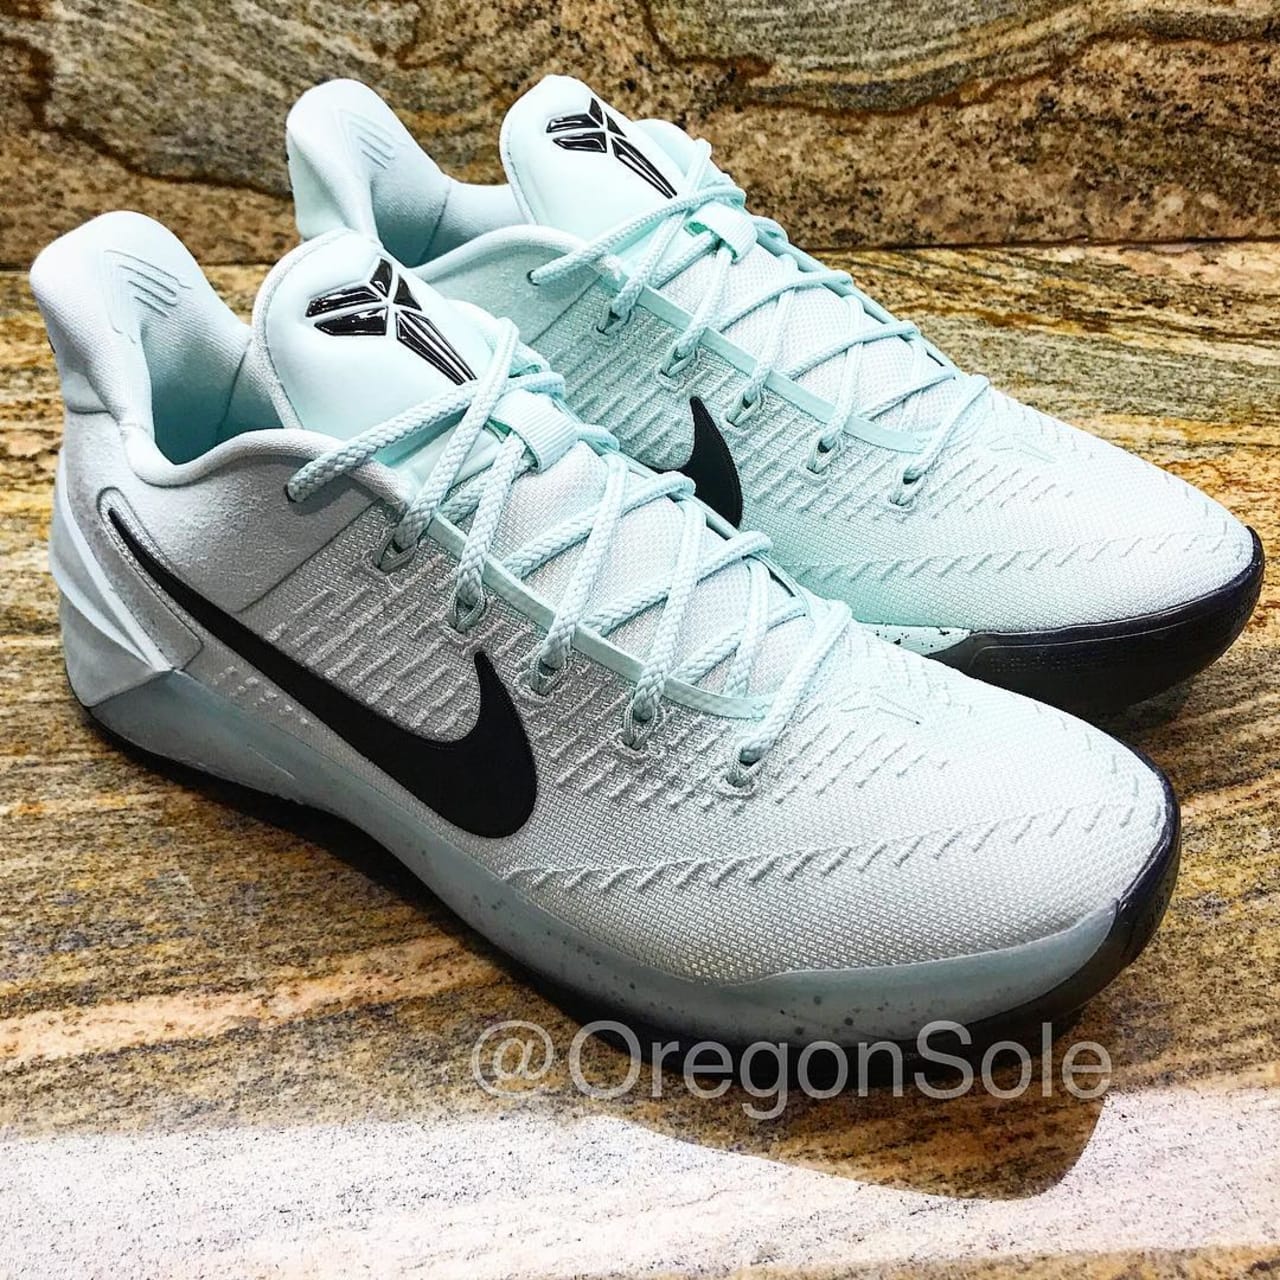 Nike Kobe A.D. Igloo Release Date 